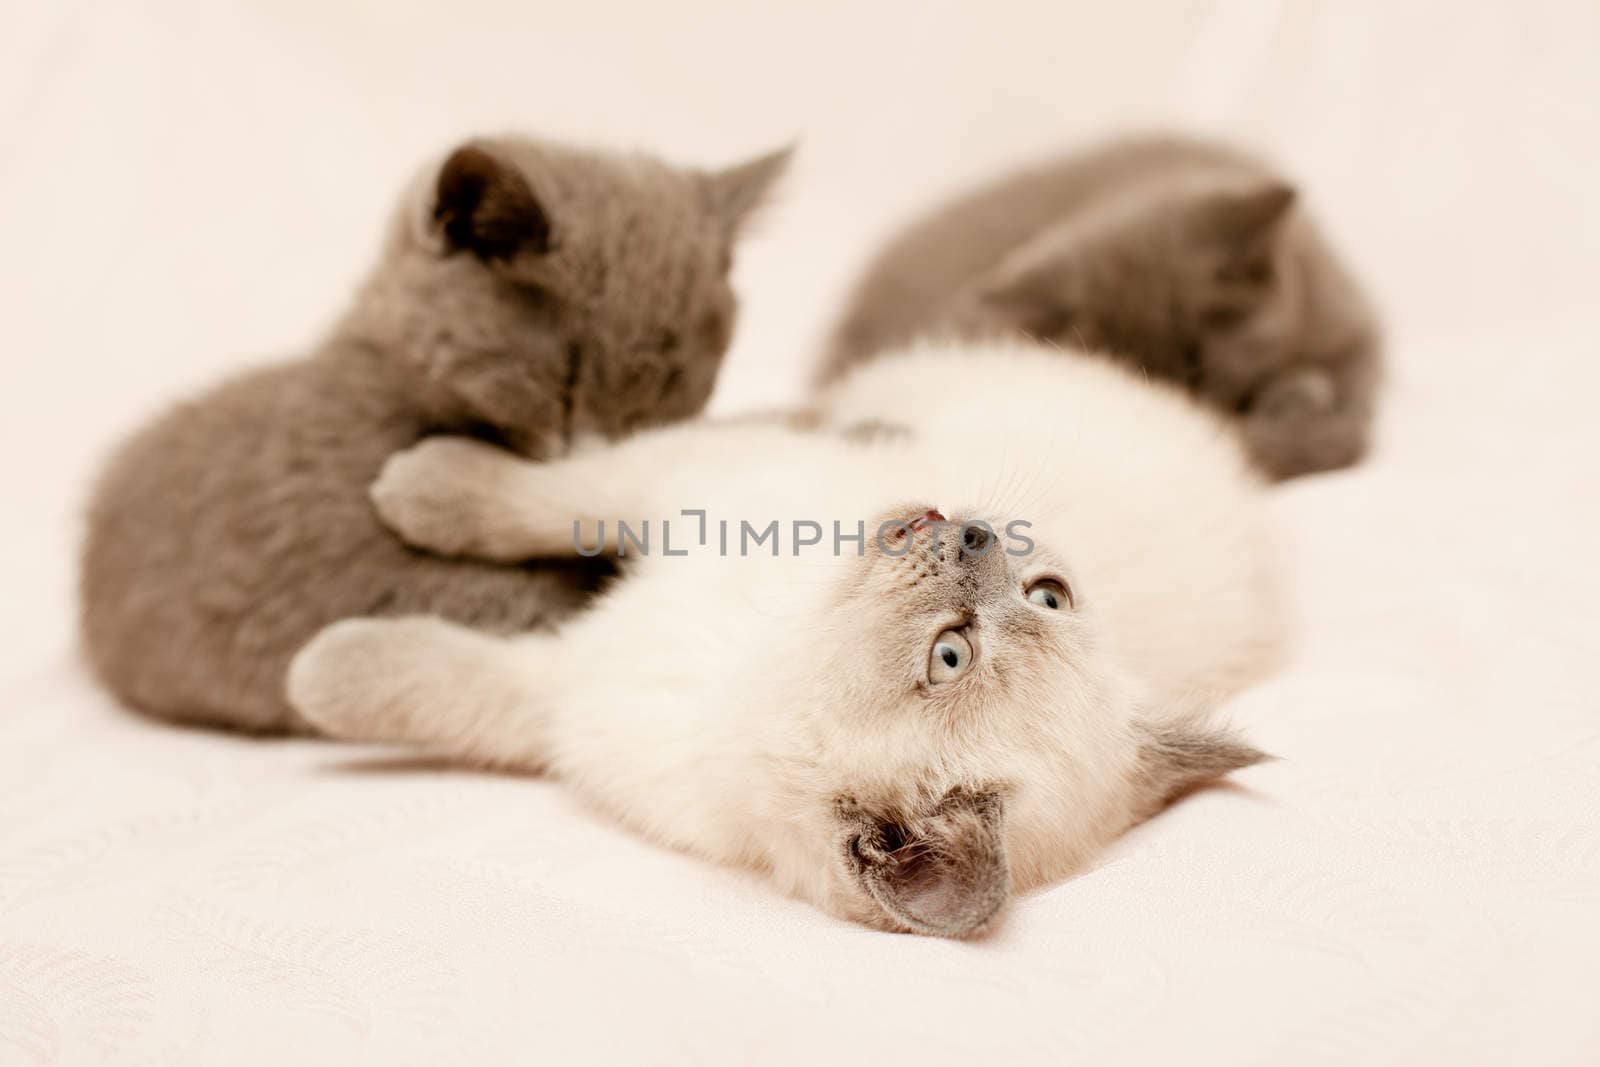 Three kittens by foaloce